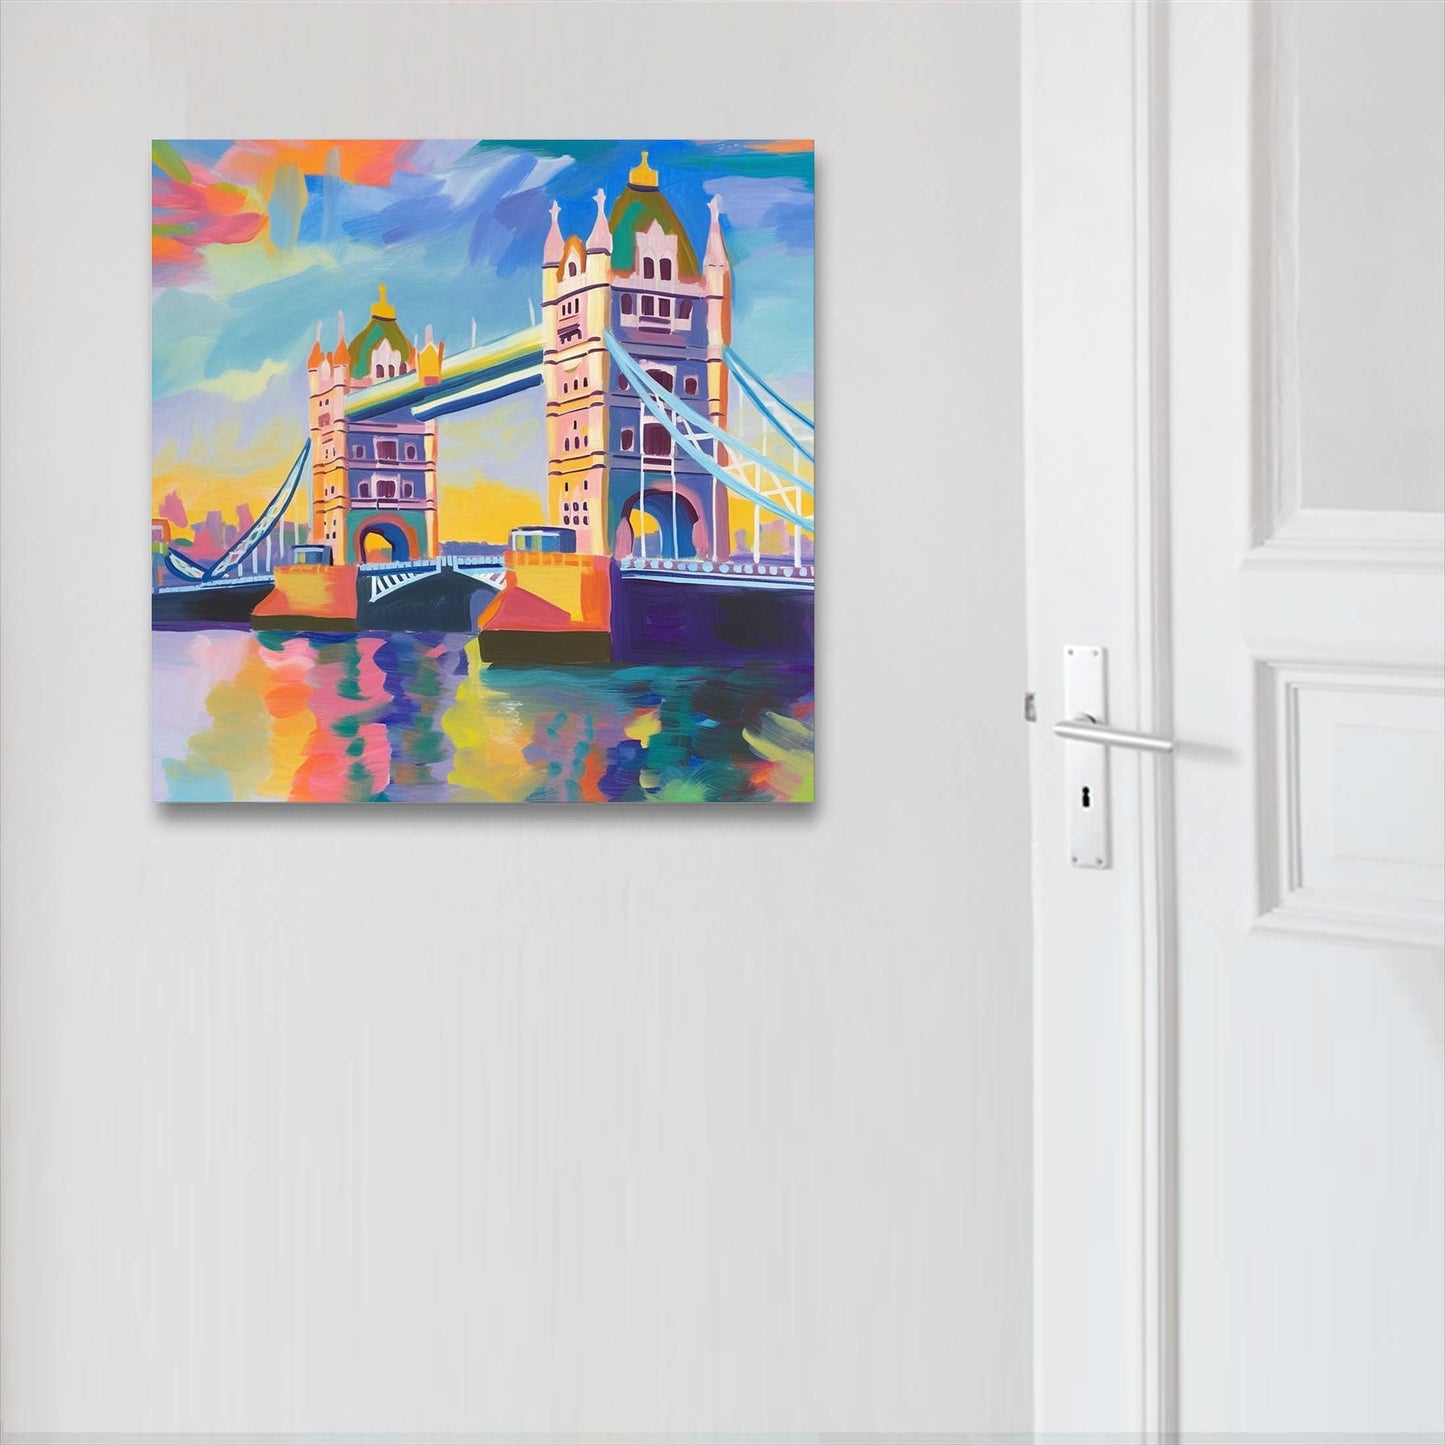 London Tower Bridge - Wandbild in der Stilrichtung des Impressionismus